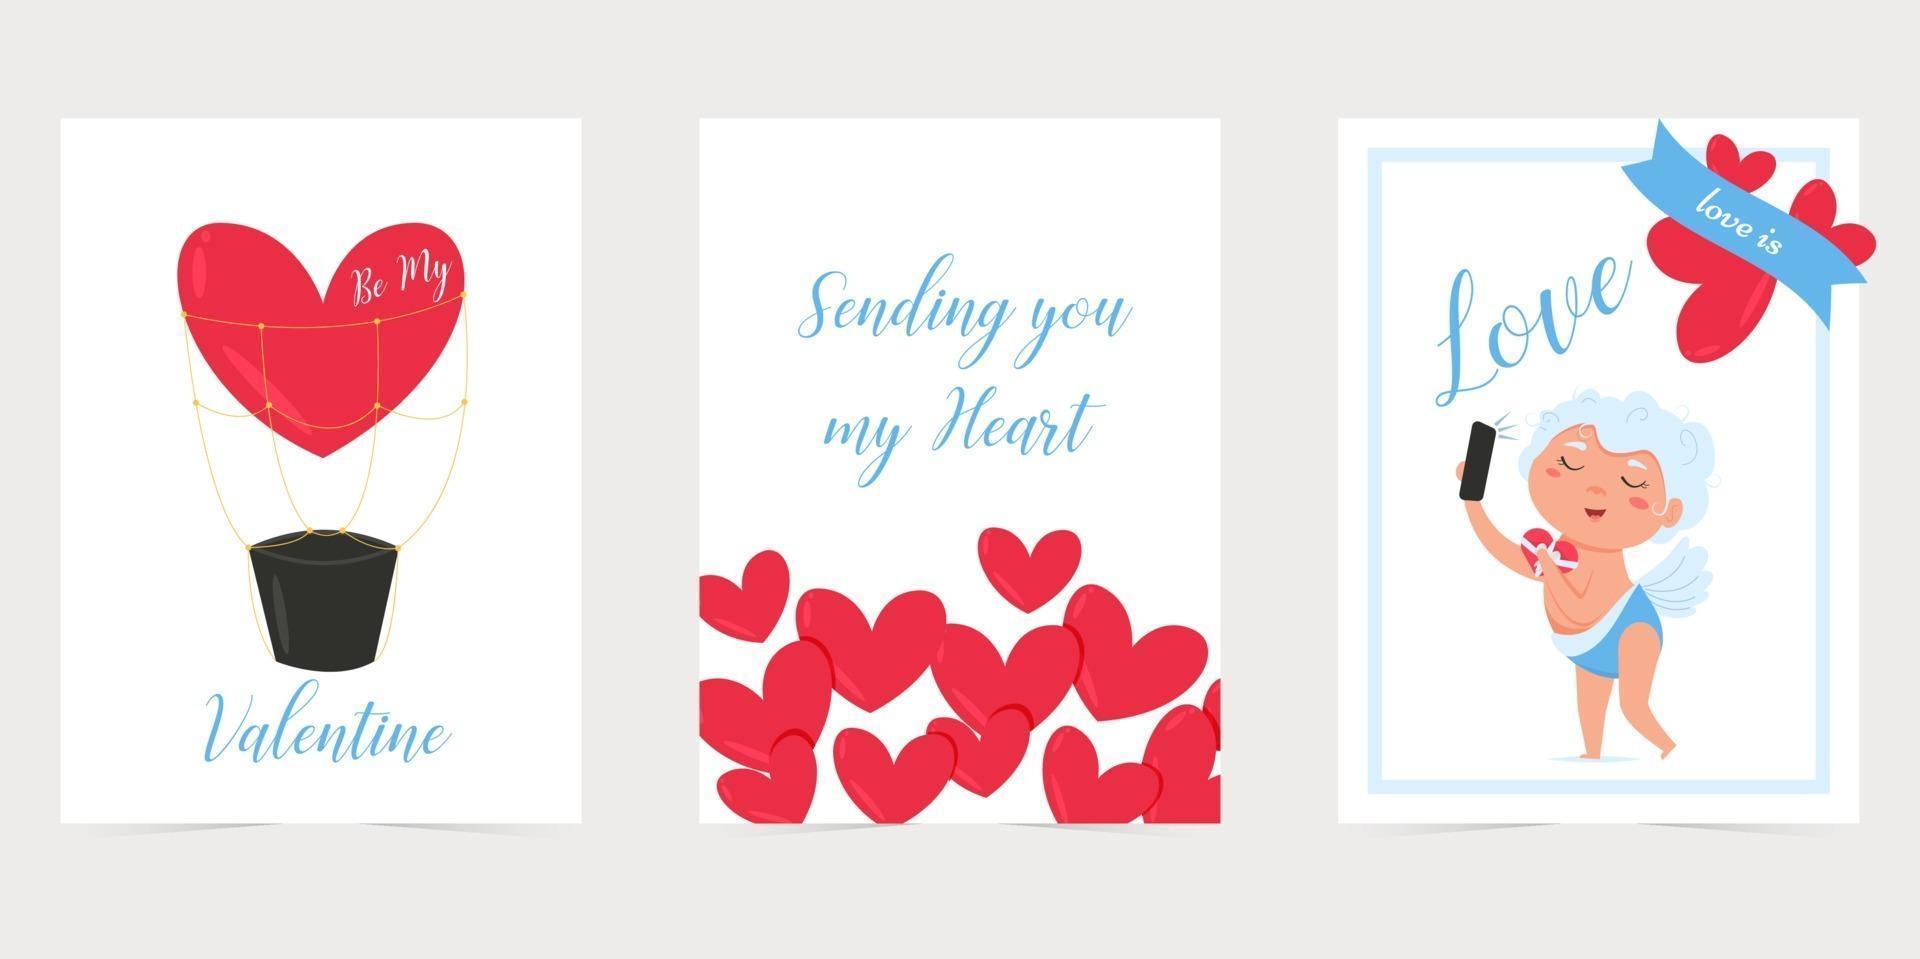 cartão de dia dos namorados com coração vermelho. amo você banner. feriado romântico cartaz ou cartão de dia dos namorados. vetor